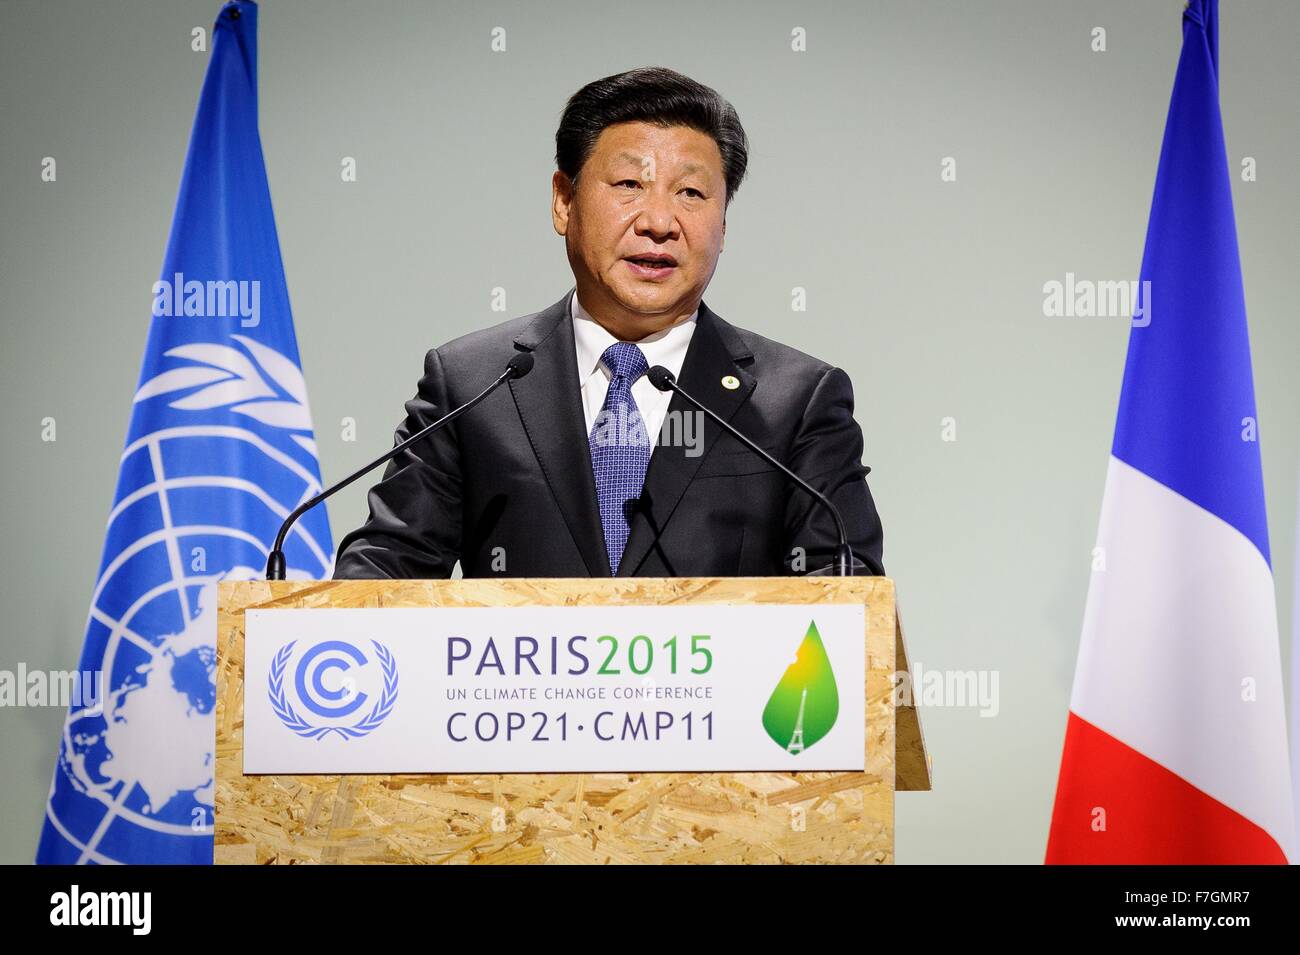 Le Bourget, France. 30 novembre, 2015. Le président chinois Xi Jinping traite de la session plénière de la COP21, Conférence des Nations Unies sur les changements climatiques 30 novembre 2015 en dehors de Paris Le Bourget, France. Banque D'Images